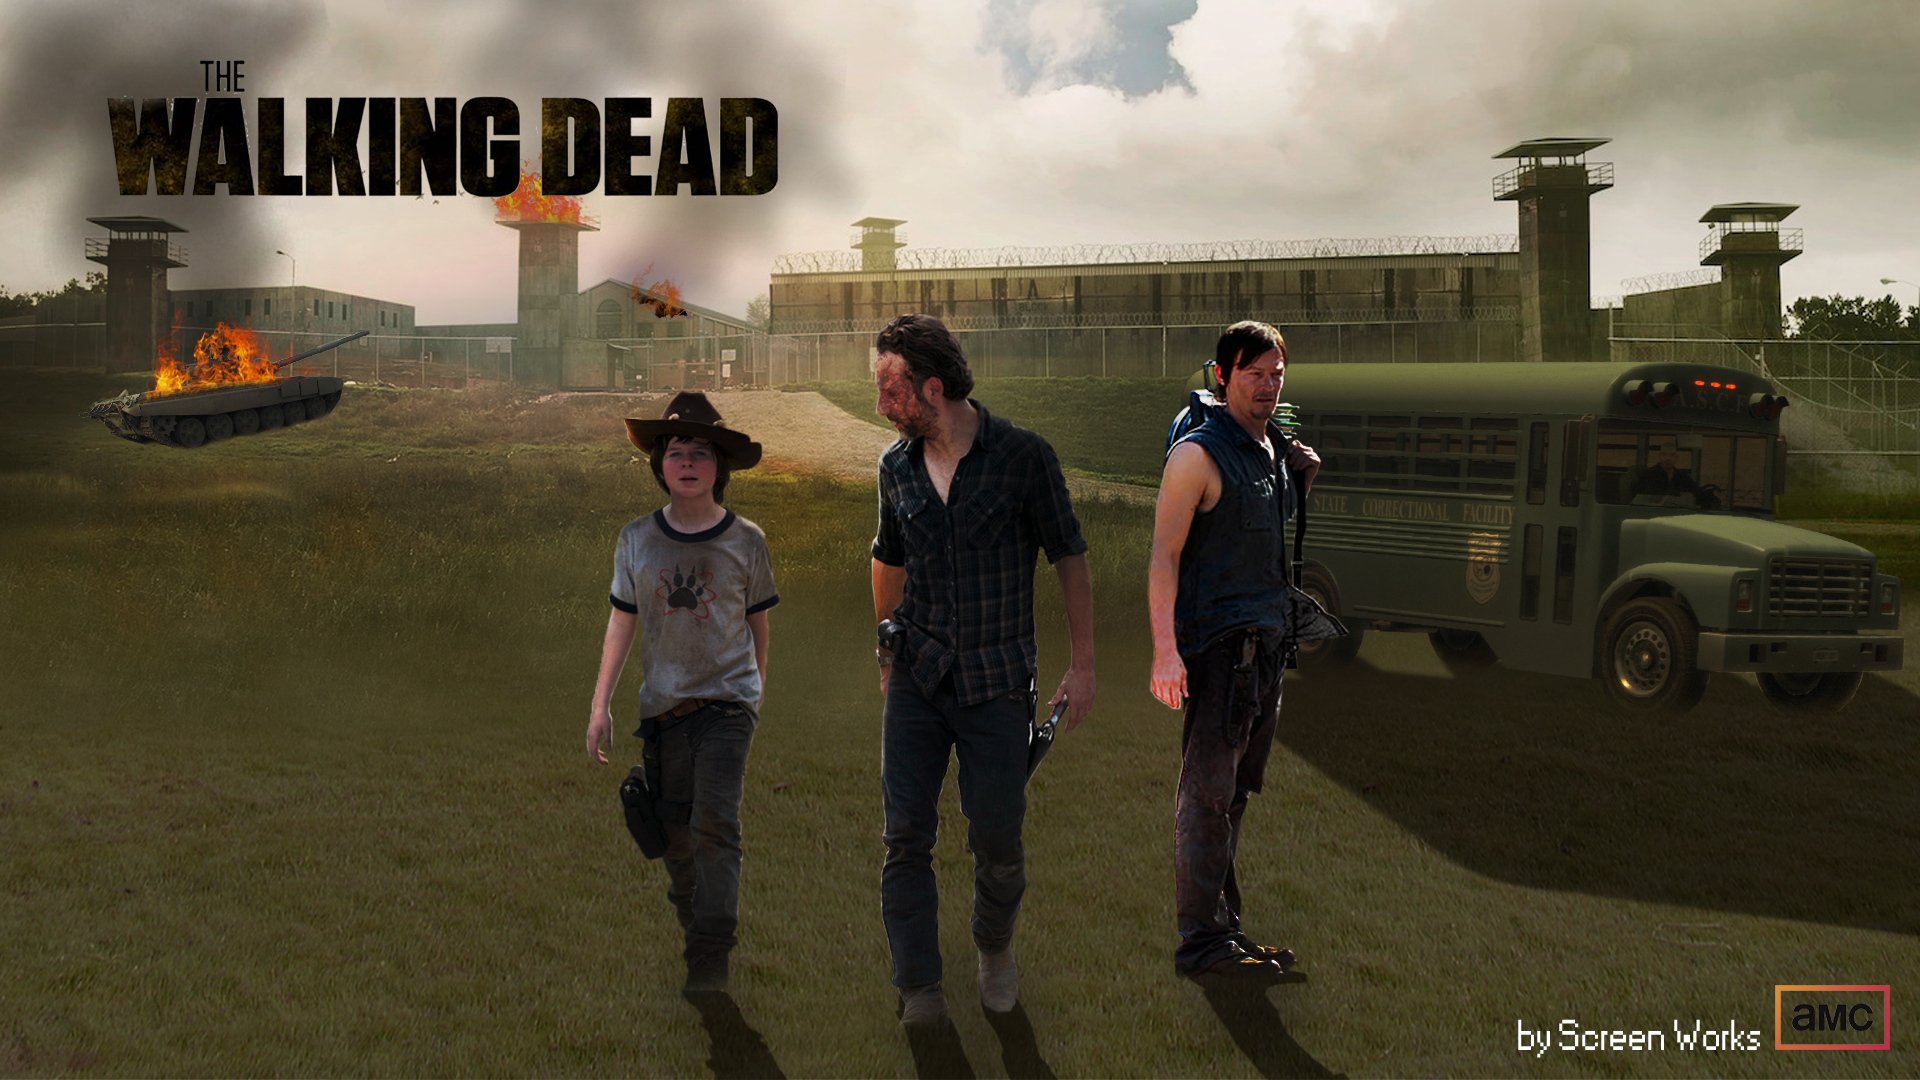 Walking Dead Wallpaper Season 3 The Walking Dead Season